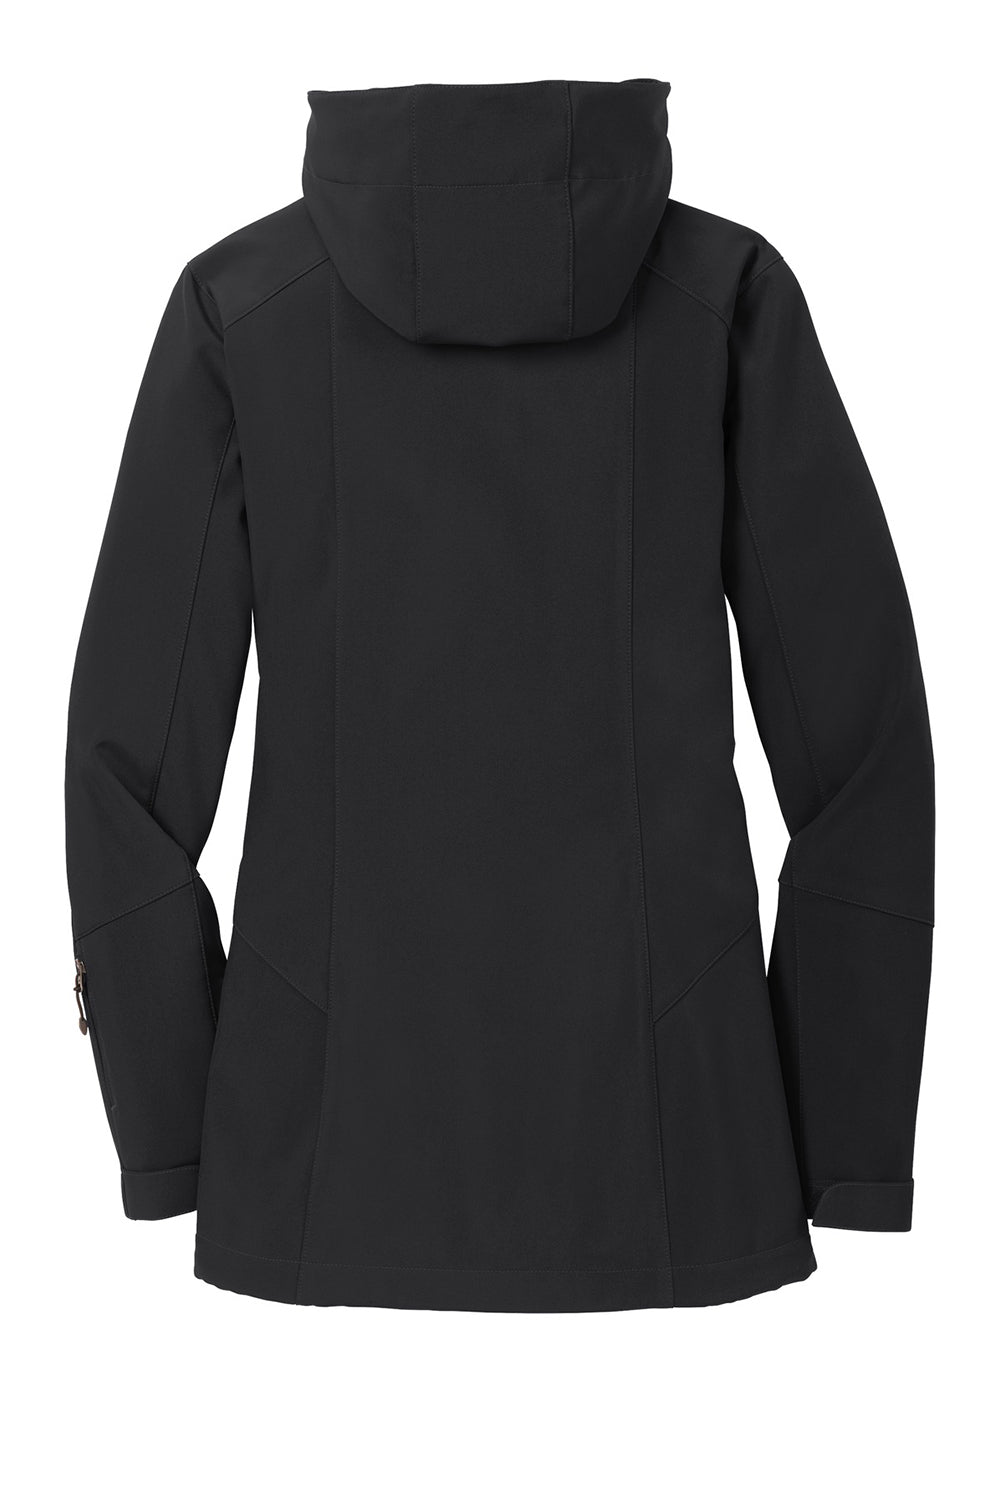 Eddie Bauer EB537 Womens Water Resistant Full Zip Hooded Jacket Black Flat Back